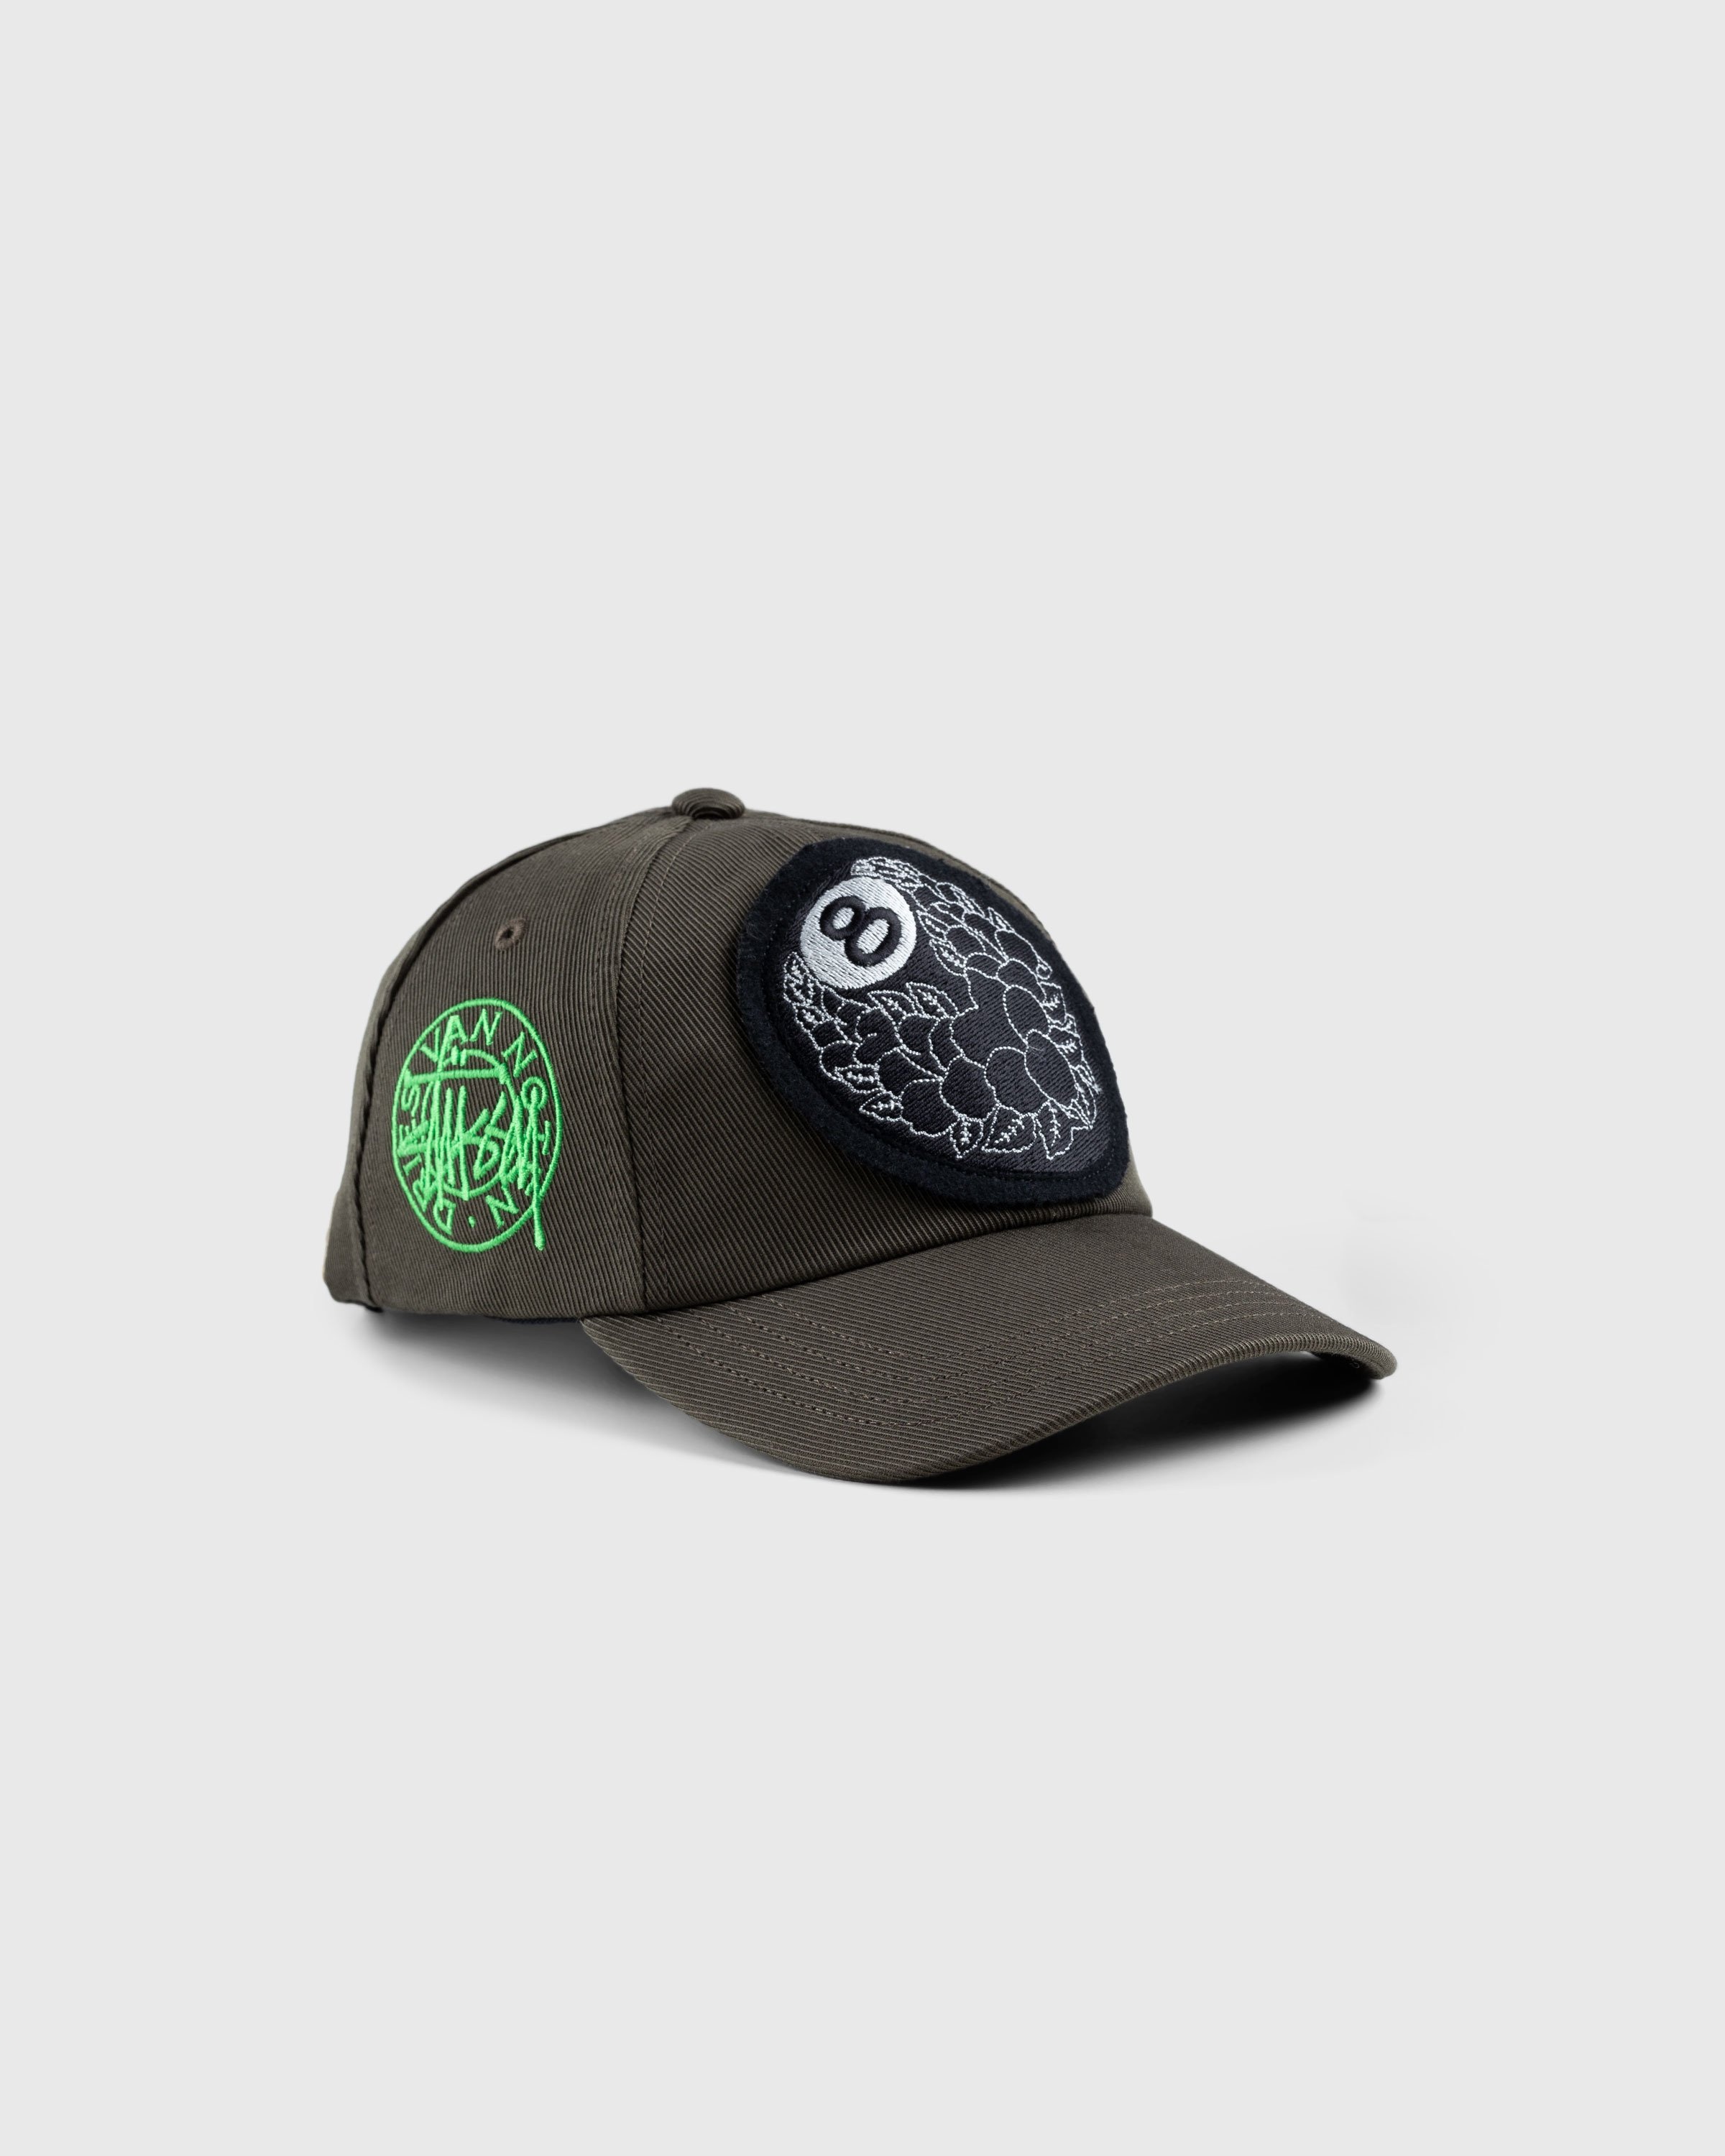 Stüssy x Dries van Noten – 8 Ball Patch Cap - Hats - Green - Image 1